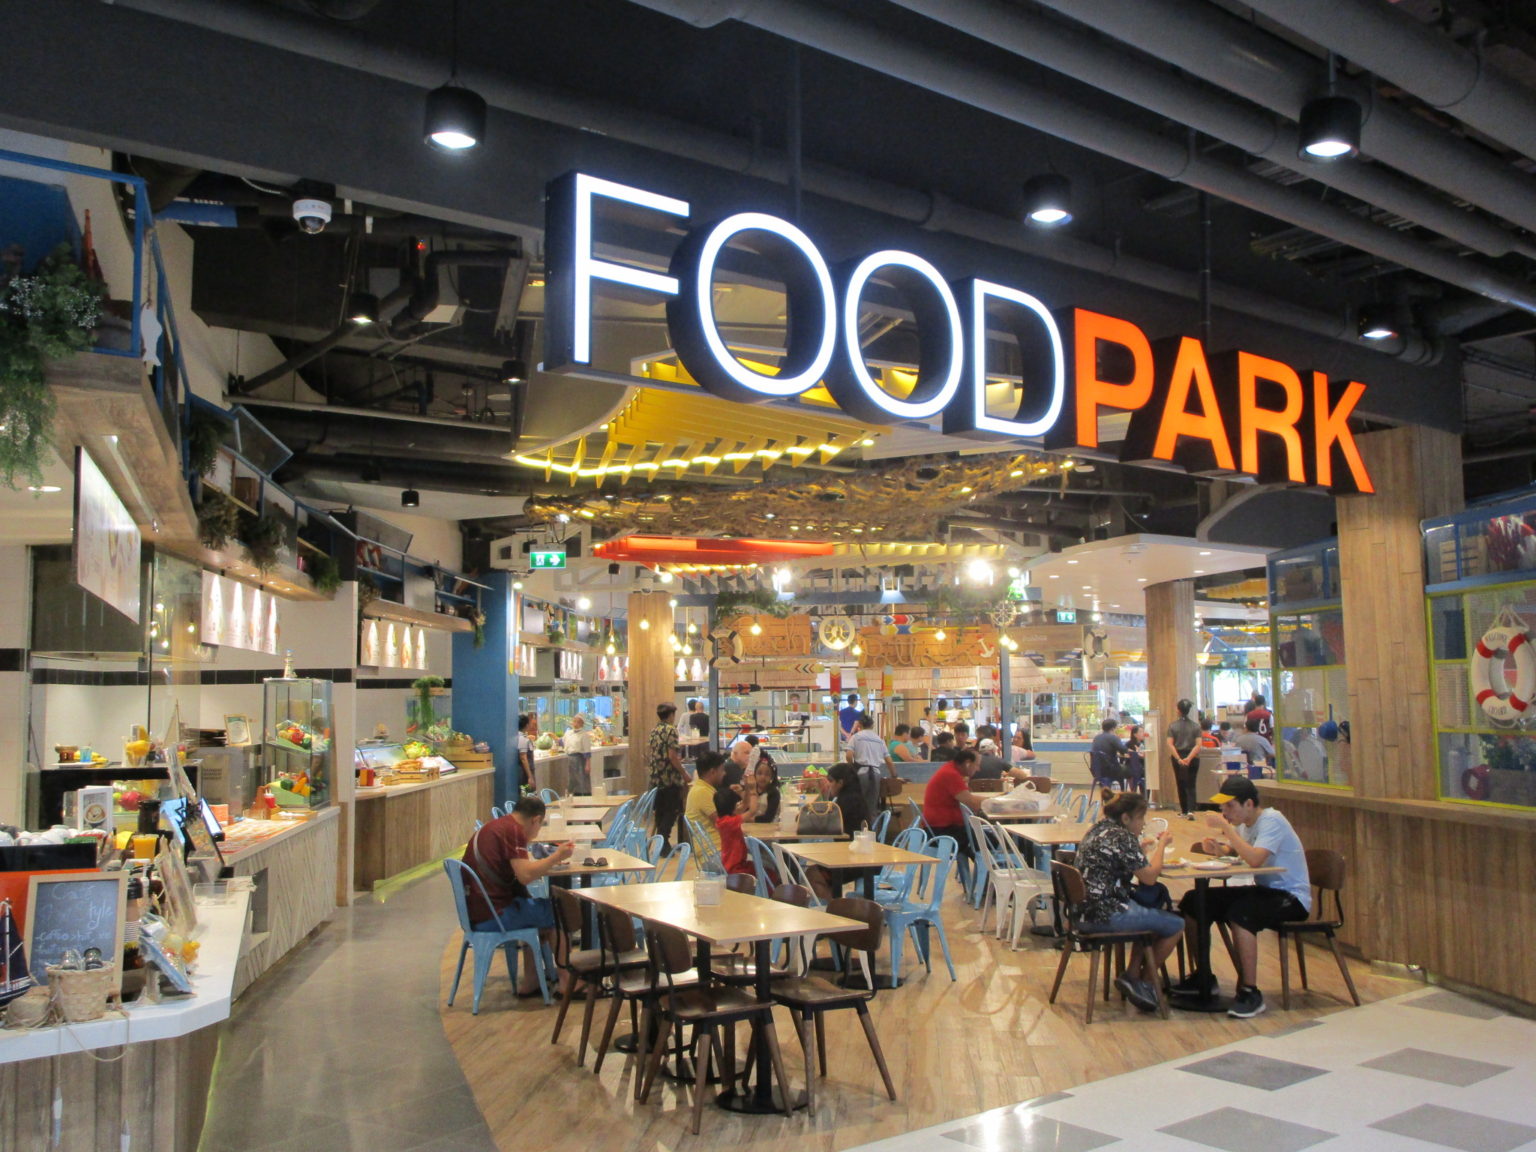 Food Park - FooD Park Central Marina 12 1536x1152